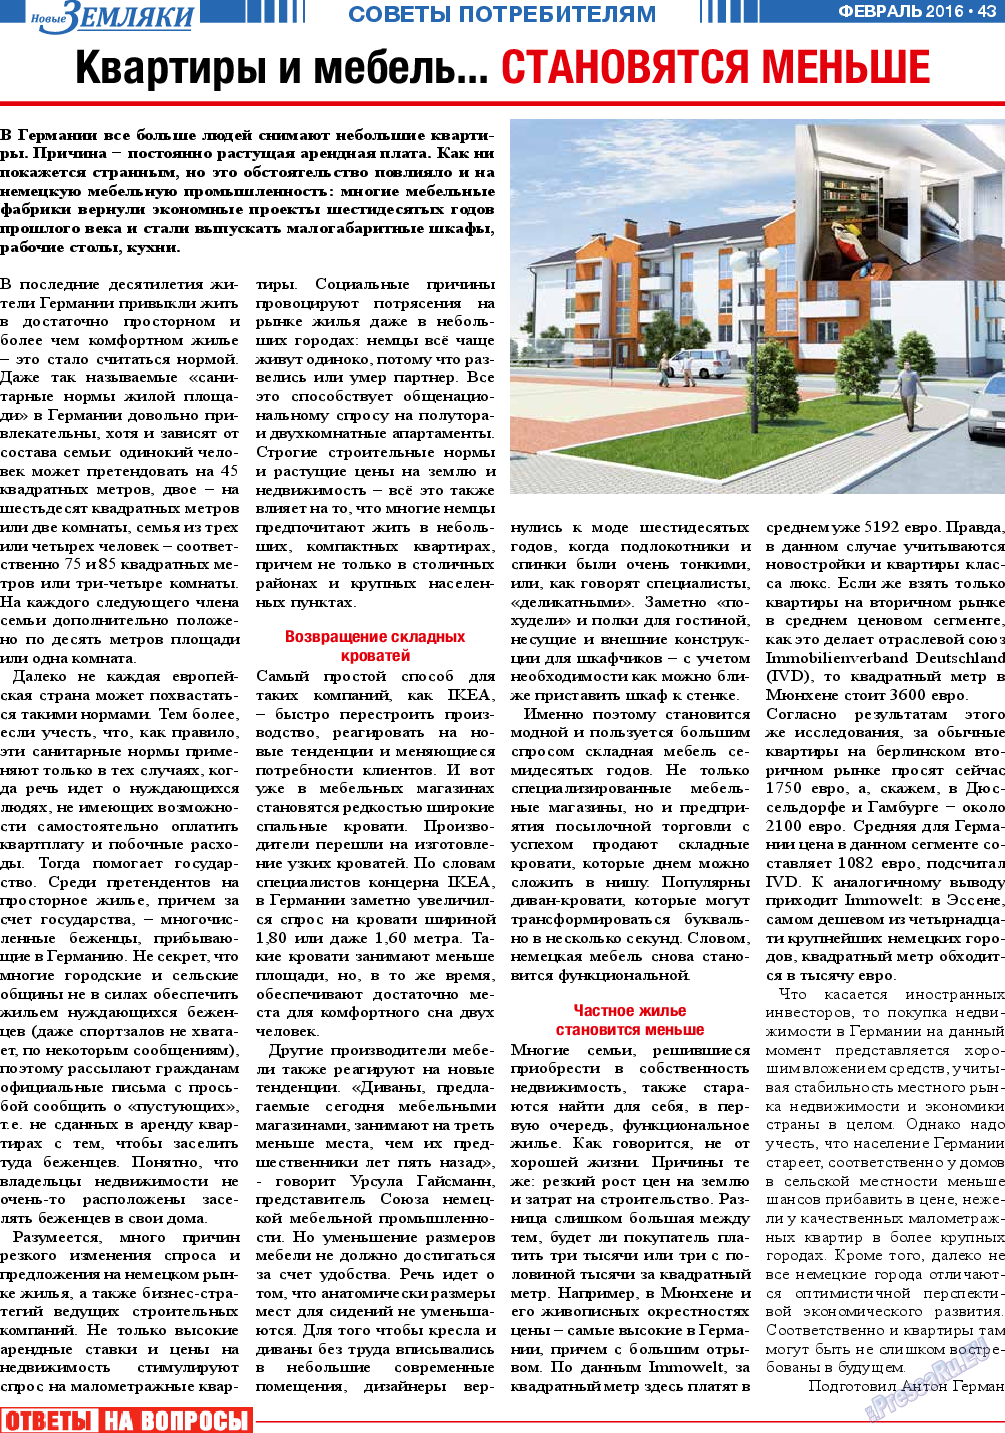 Новые Земляки, газета. 2016 №2 стр.43